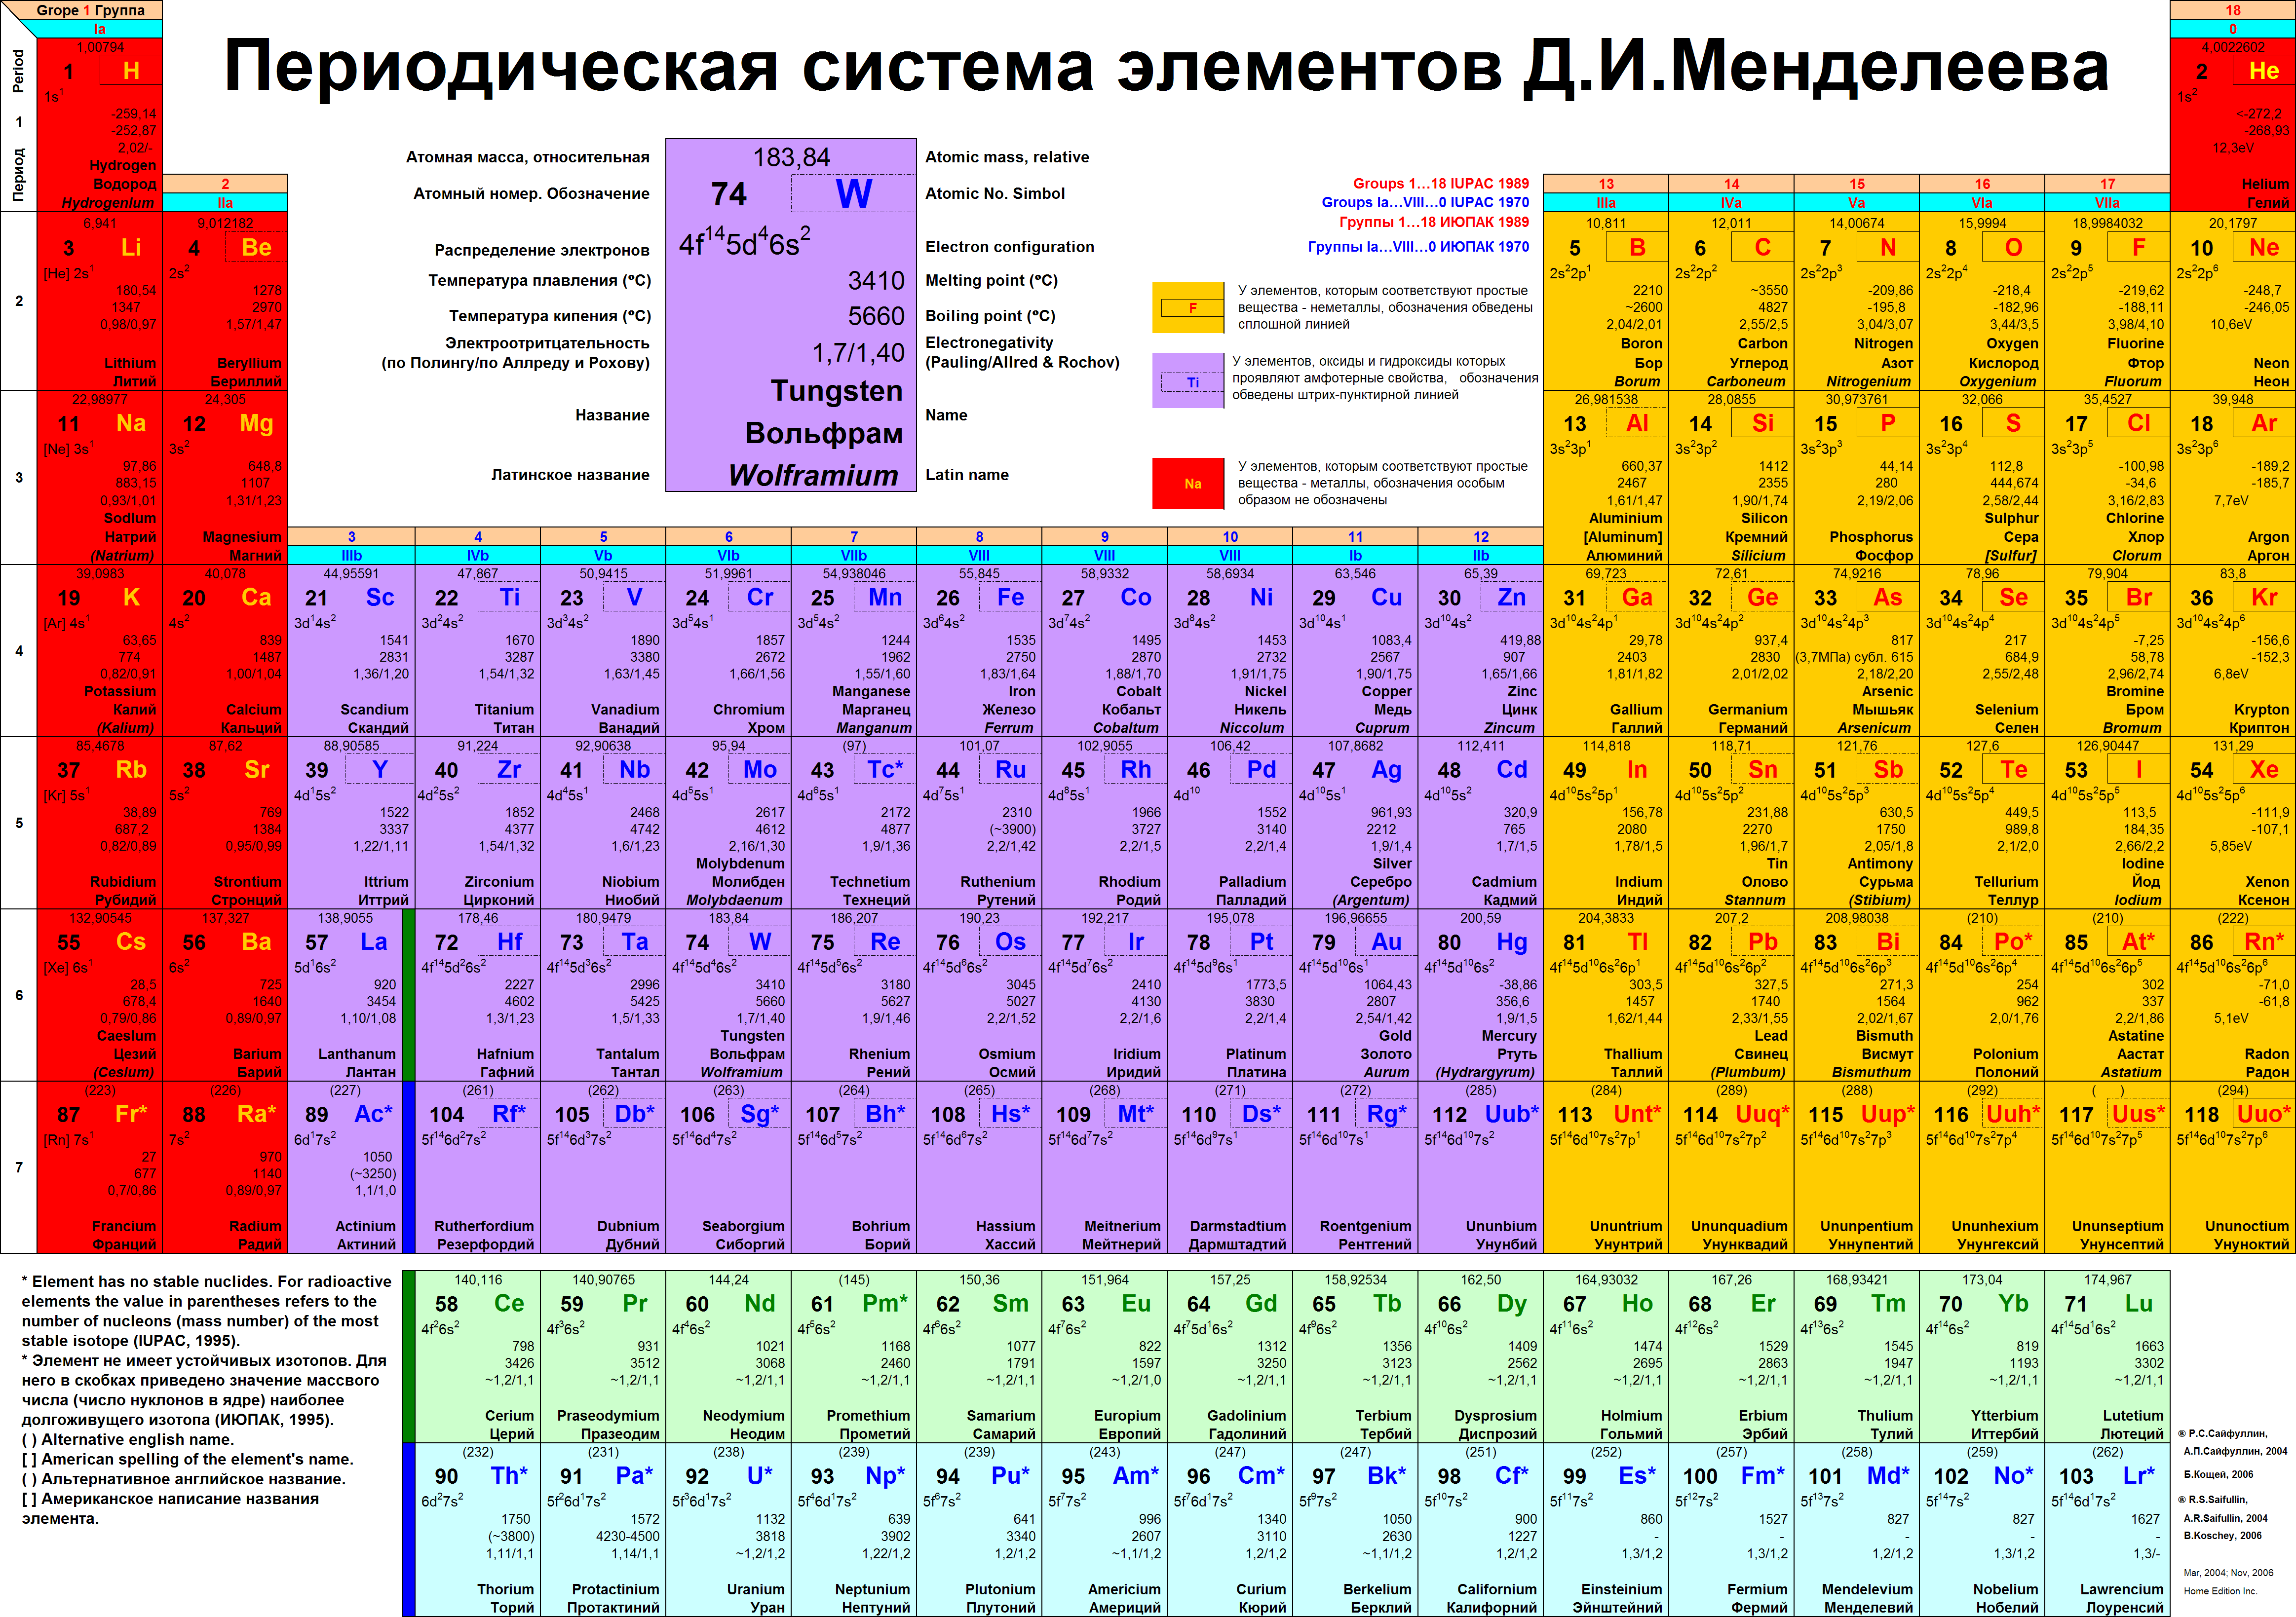 Второй элемент менделеева. Таблица Менделеева 1975 года. Современная таблица Менделеева 118 элементов. Периодическая система химических элементов д.и Менделеева полная. Длинная форма периодической таблицы Менделеева.